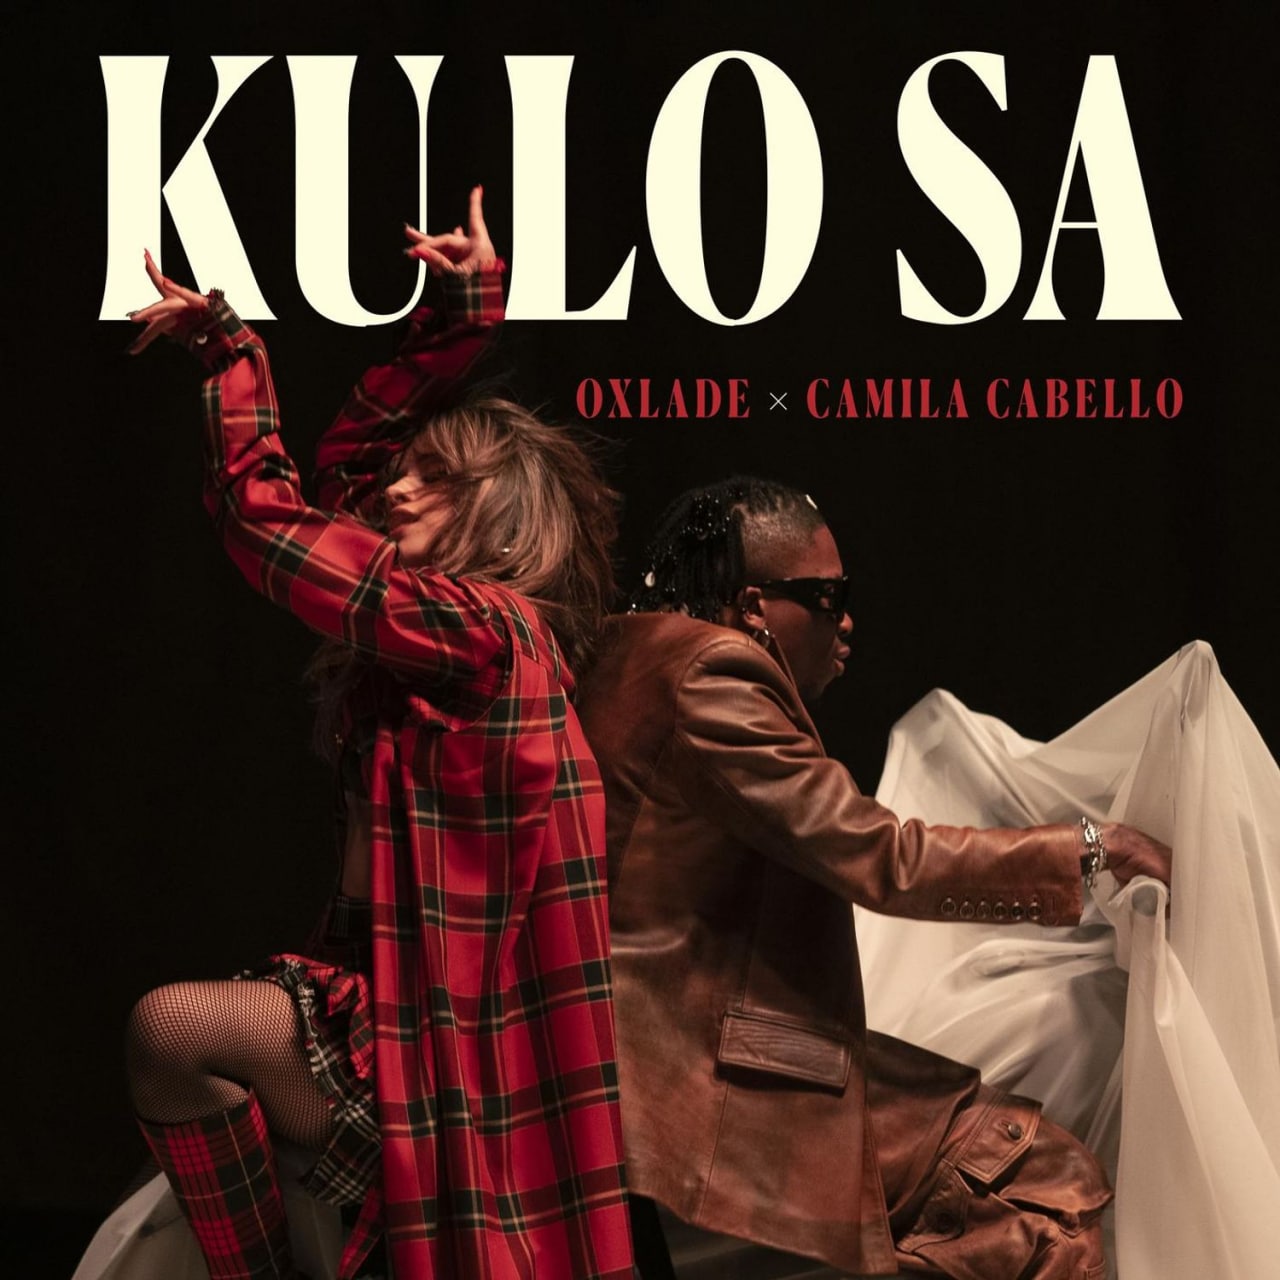 KO LO SA - Oxlade & Camila Cabello